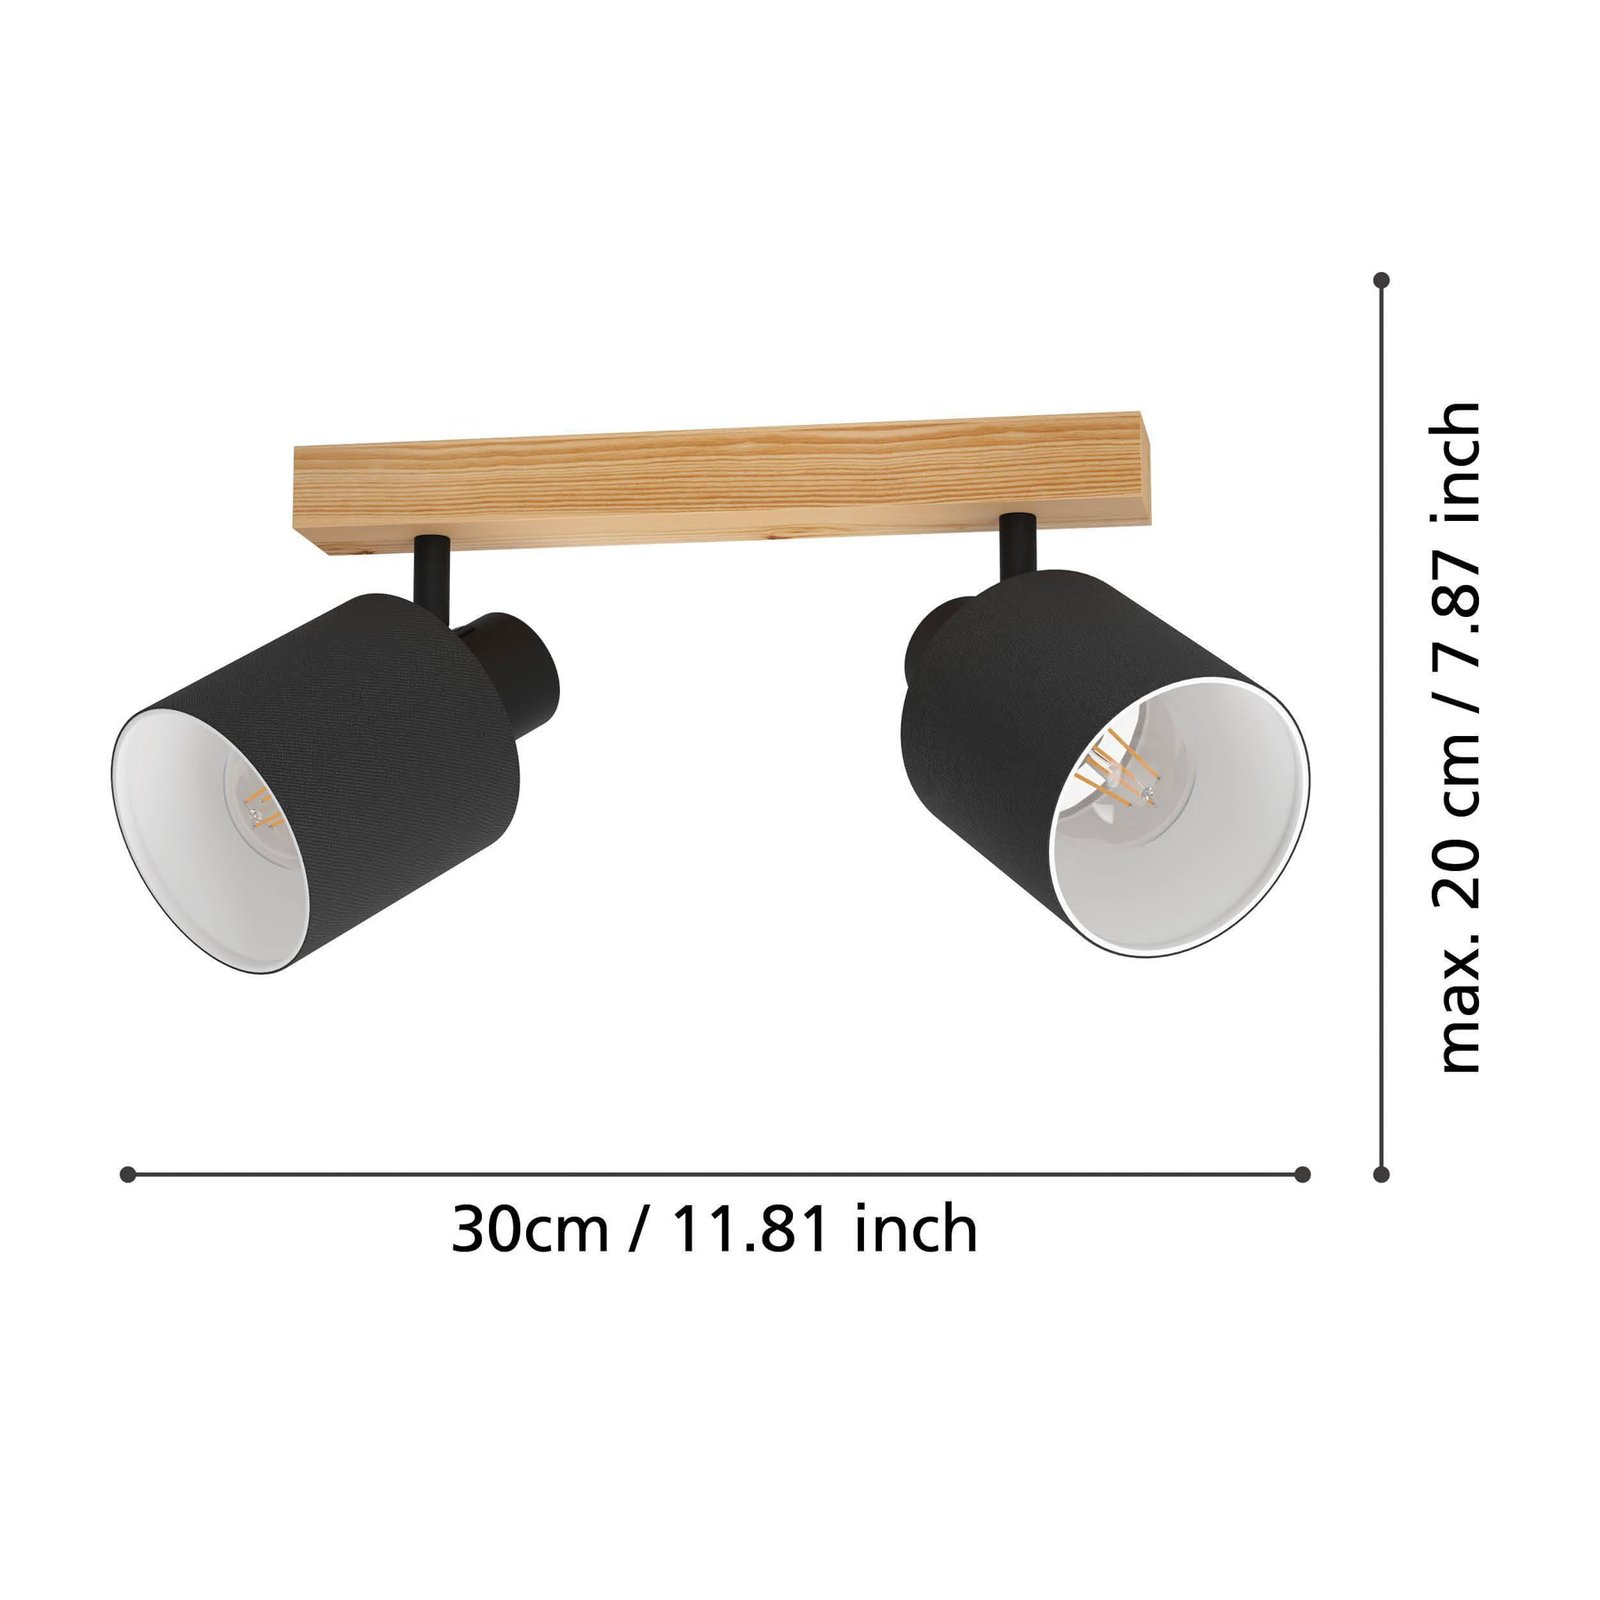 Προβολέας οροφής Batallas, μήκος 30 cm, μαύρο/ξύλο, 2-φωτισμός.